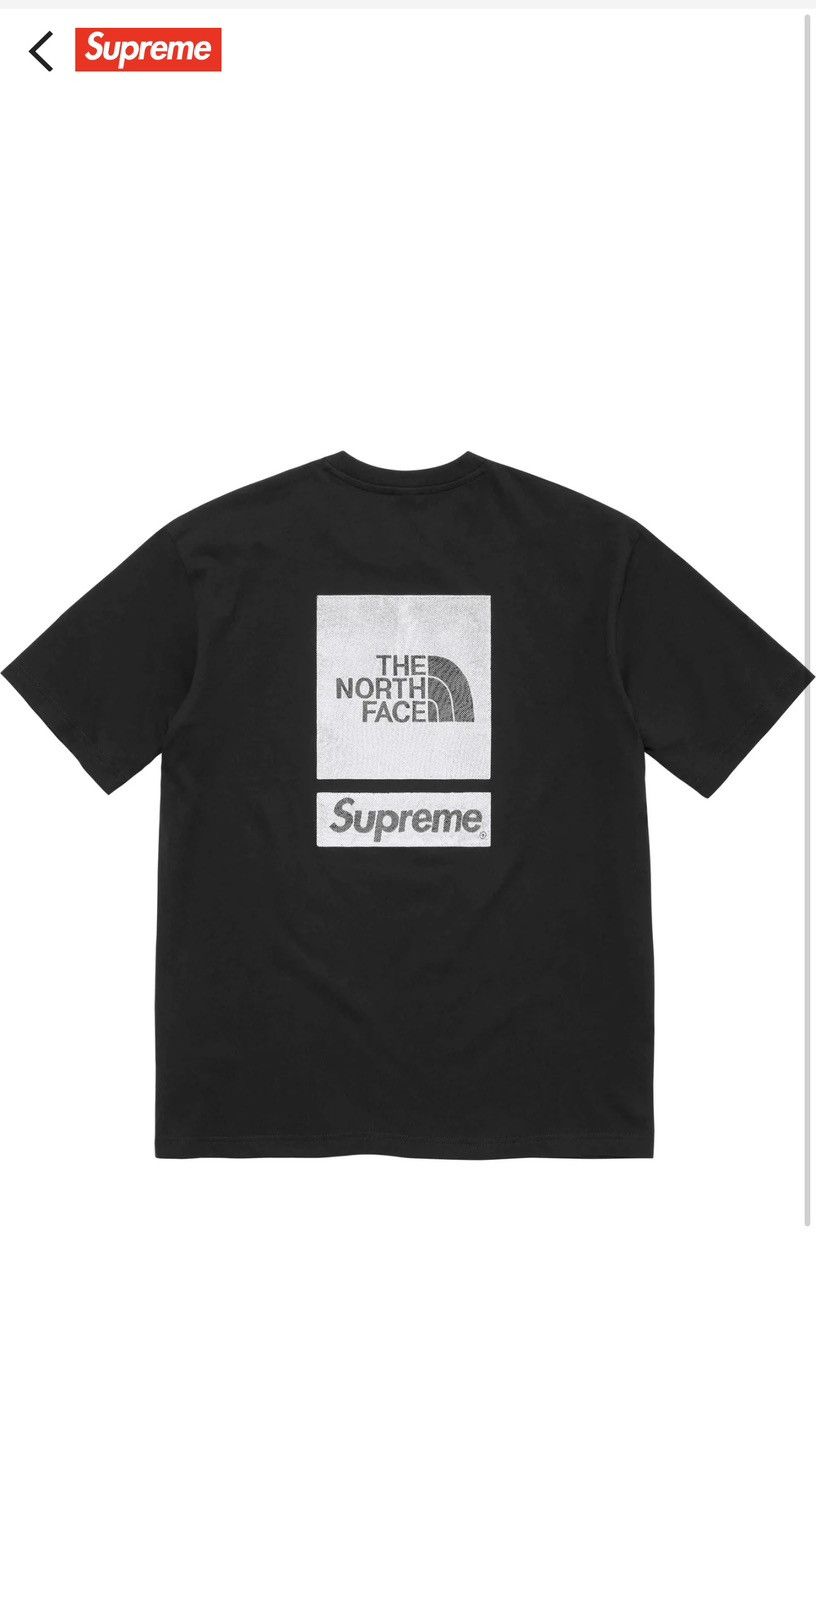 Supreme Supreme The North Face S/S Top | Grailed